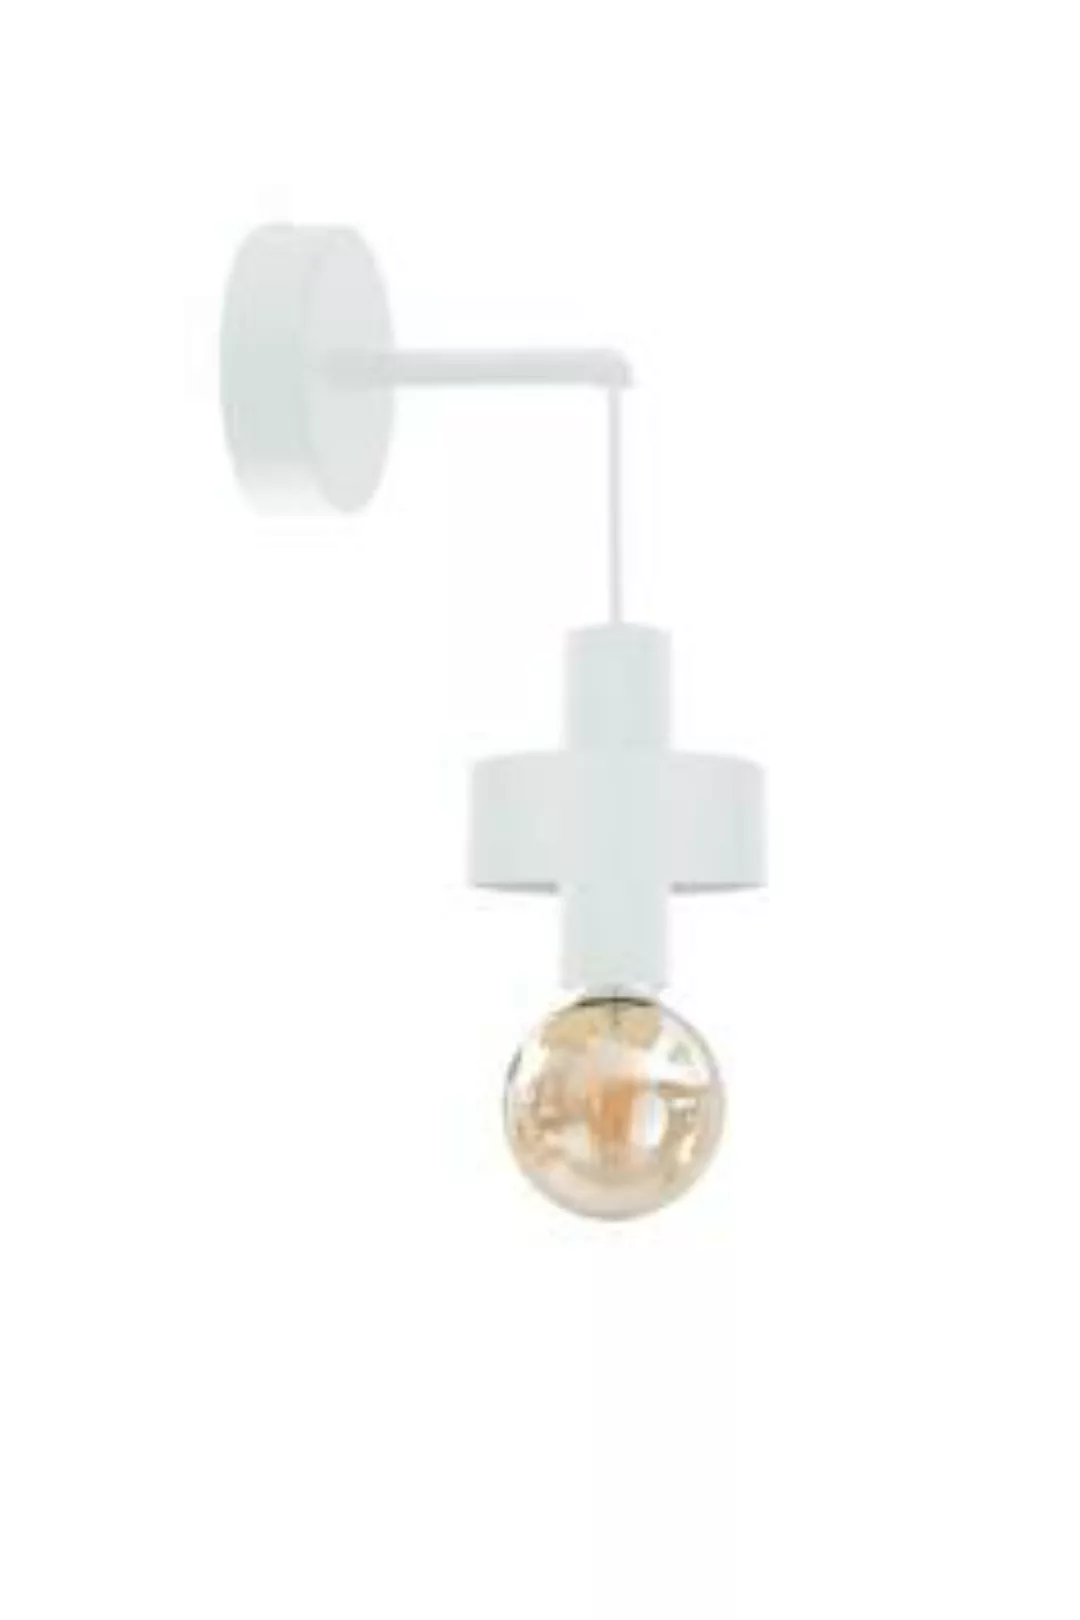 Wandlampe Weiß Metall Retro Design kompakt elegant günstig online kaufen